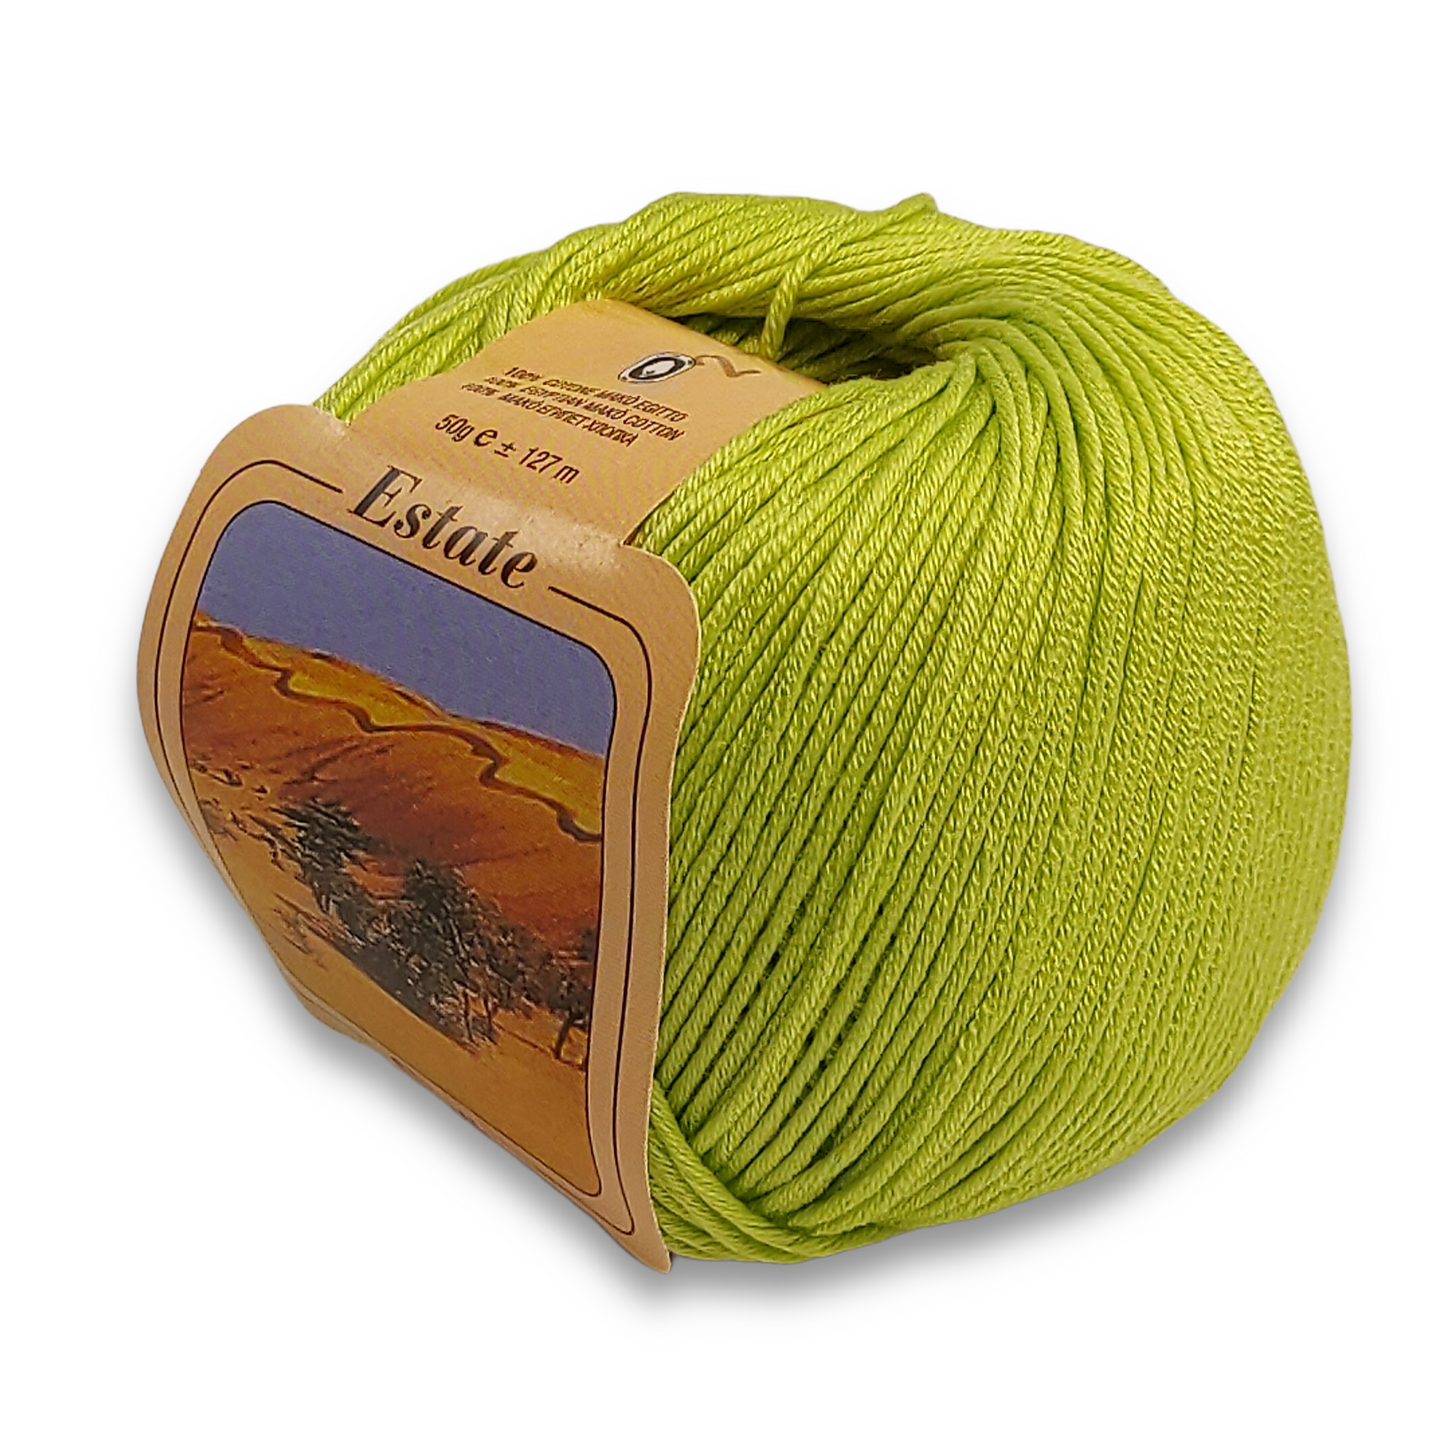 Egyptian cotton for crochet SILKE ESTATE 50 g